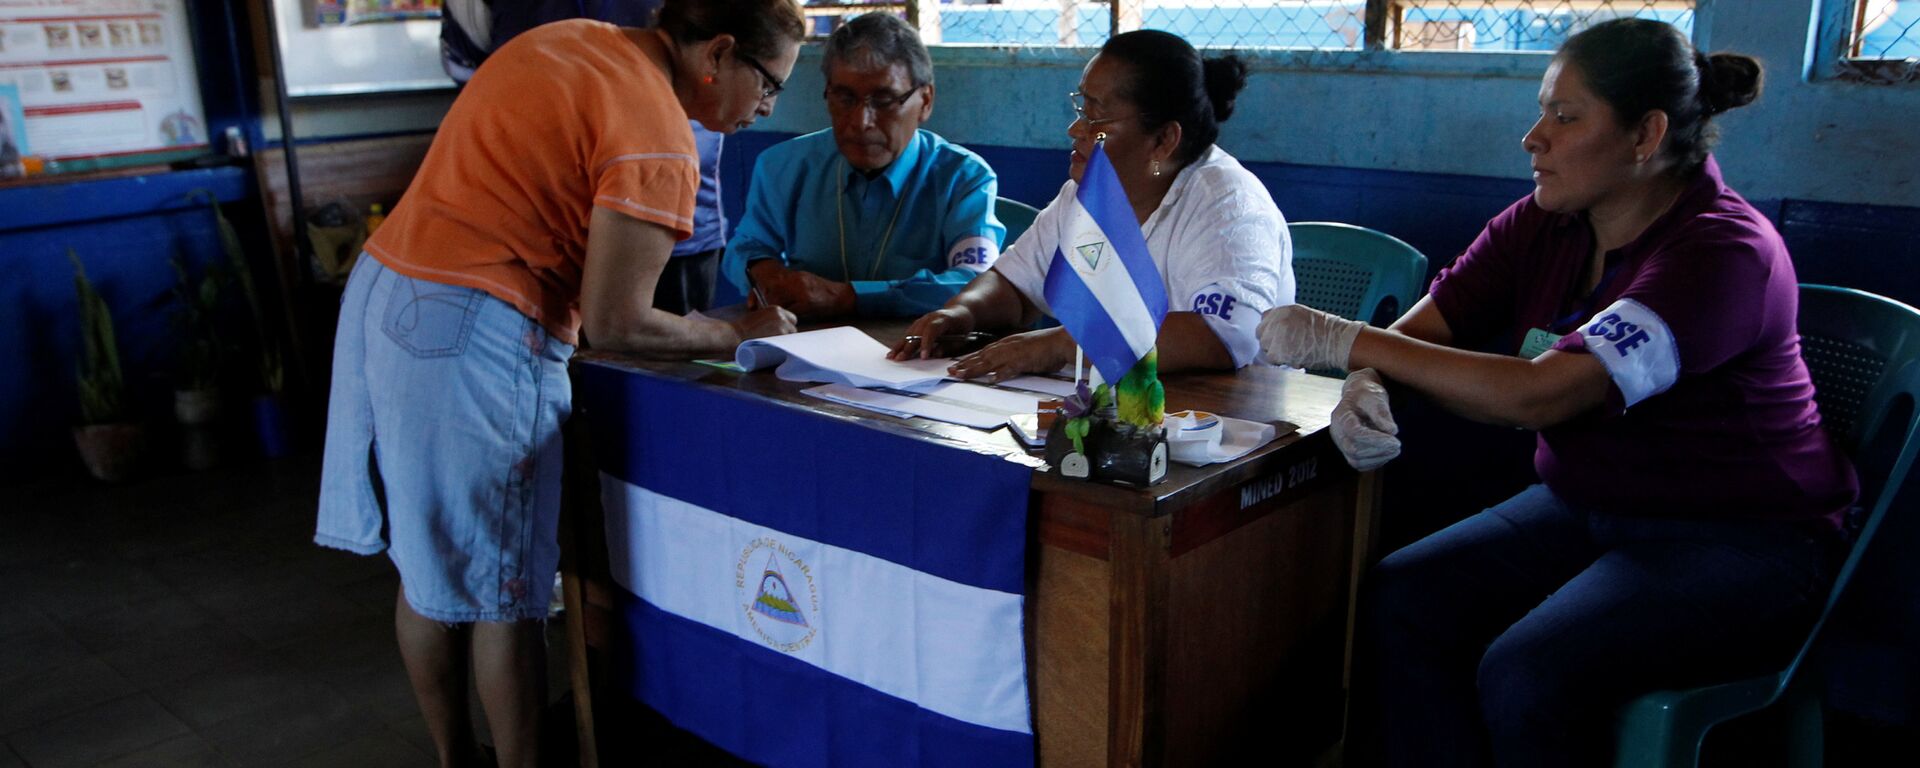 Elecciones en Nicaragua - Sputnik Mundo, 1920, 22.01.2021